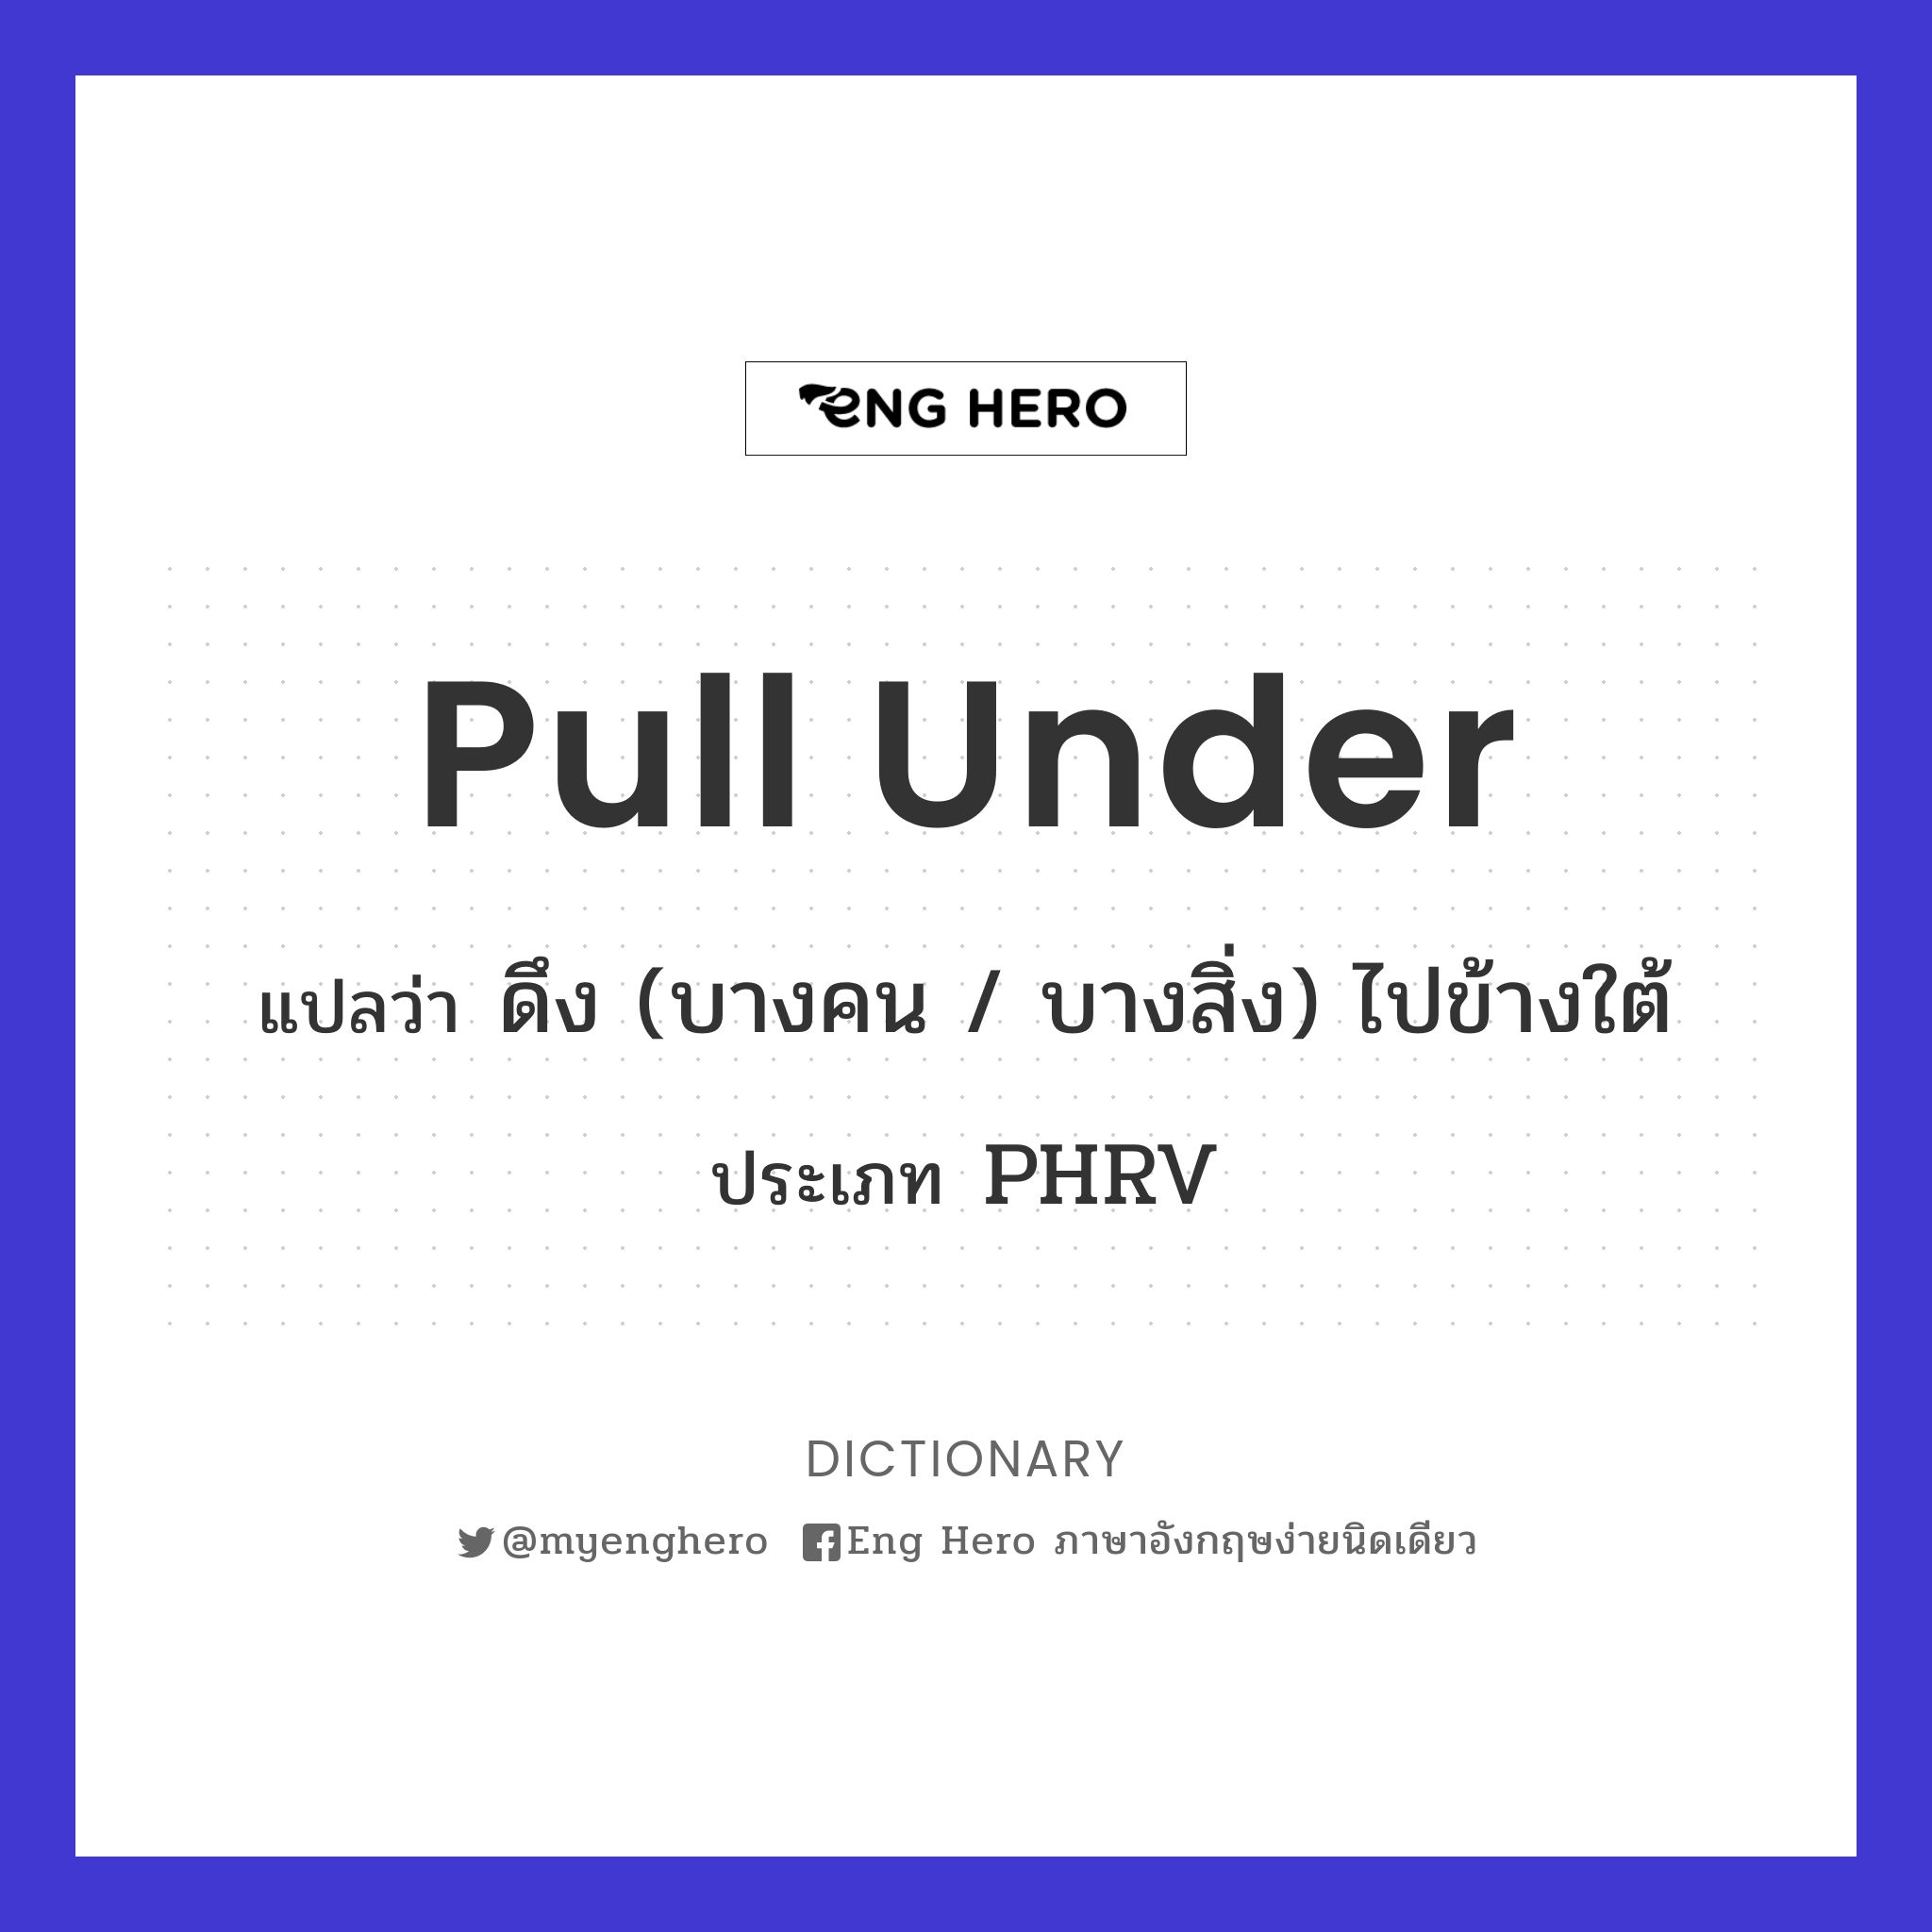 pull under